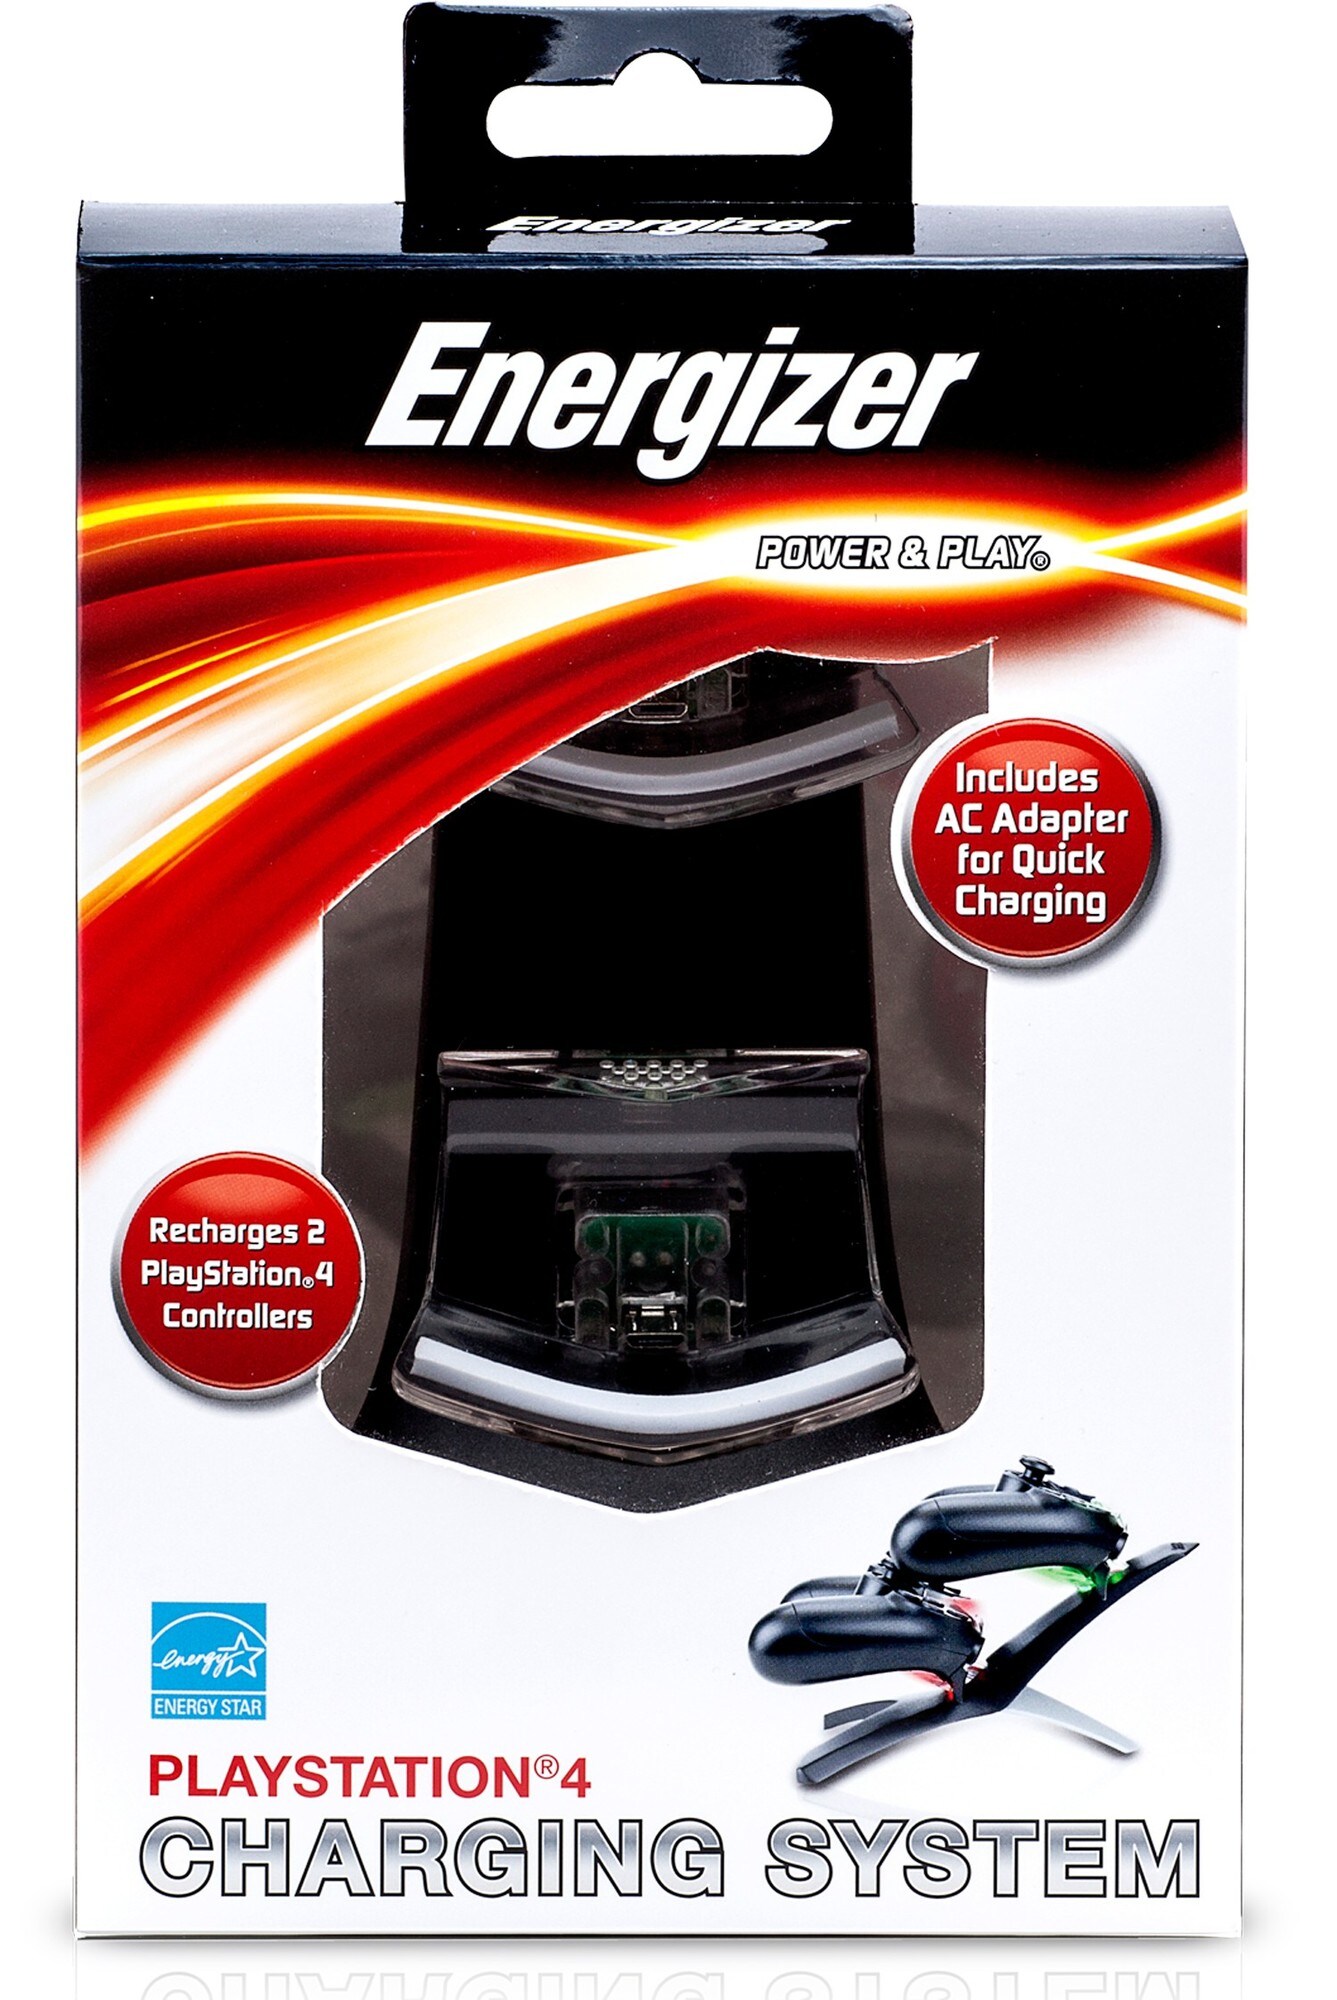 Energizer Power & Play ladesystem (PS4) - Elkjøp